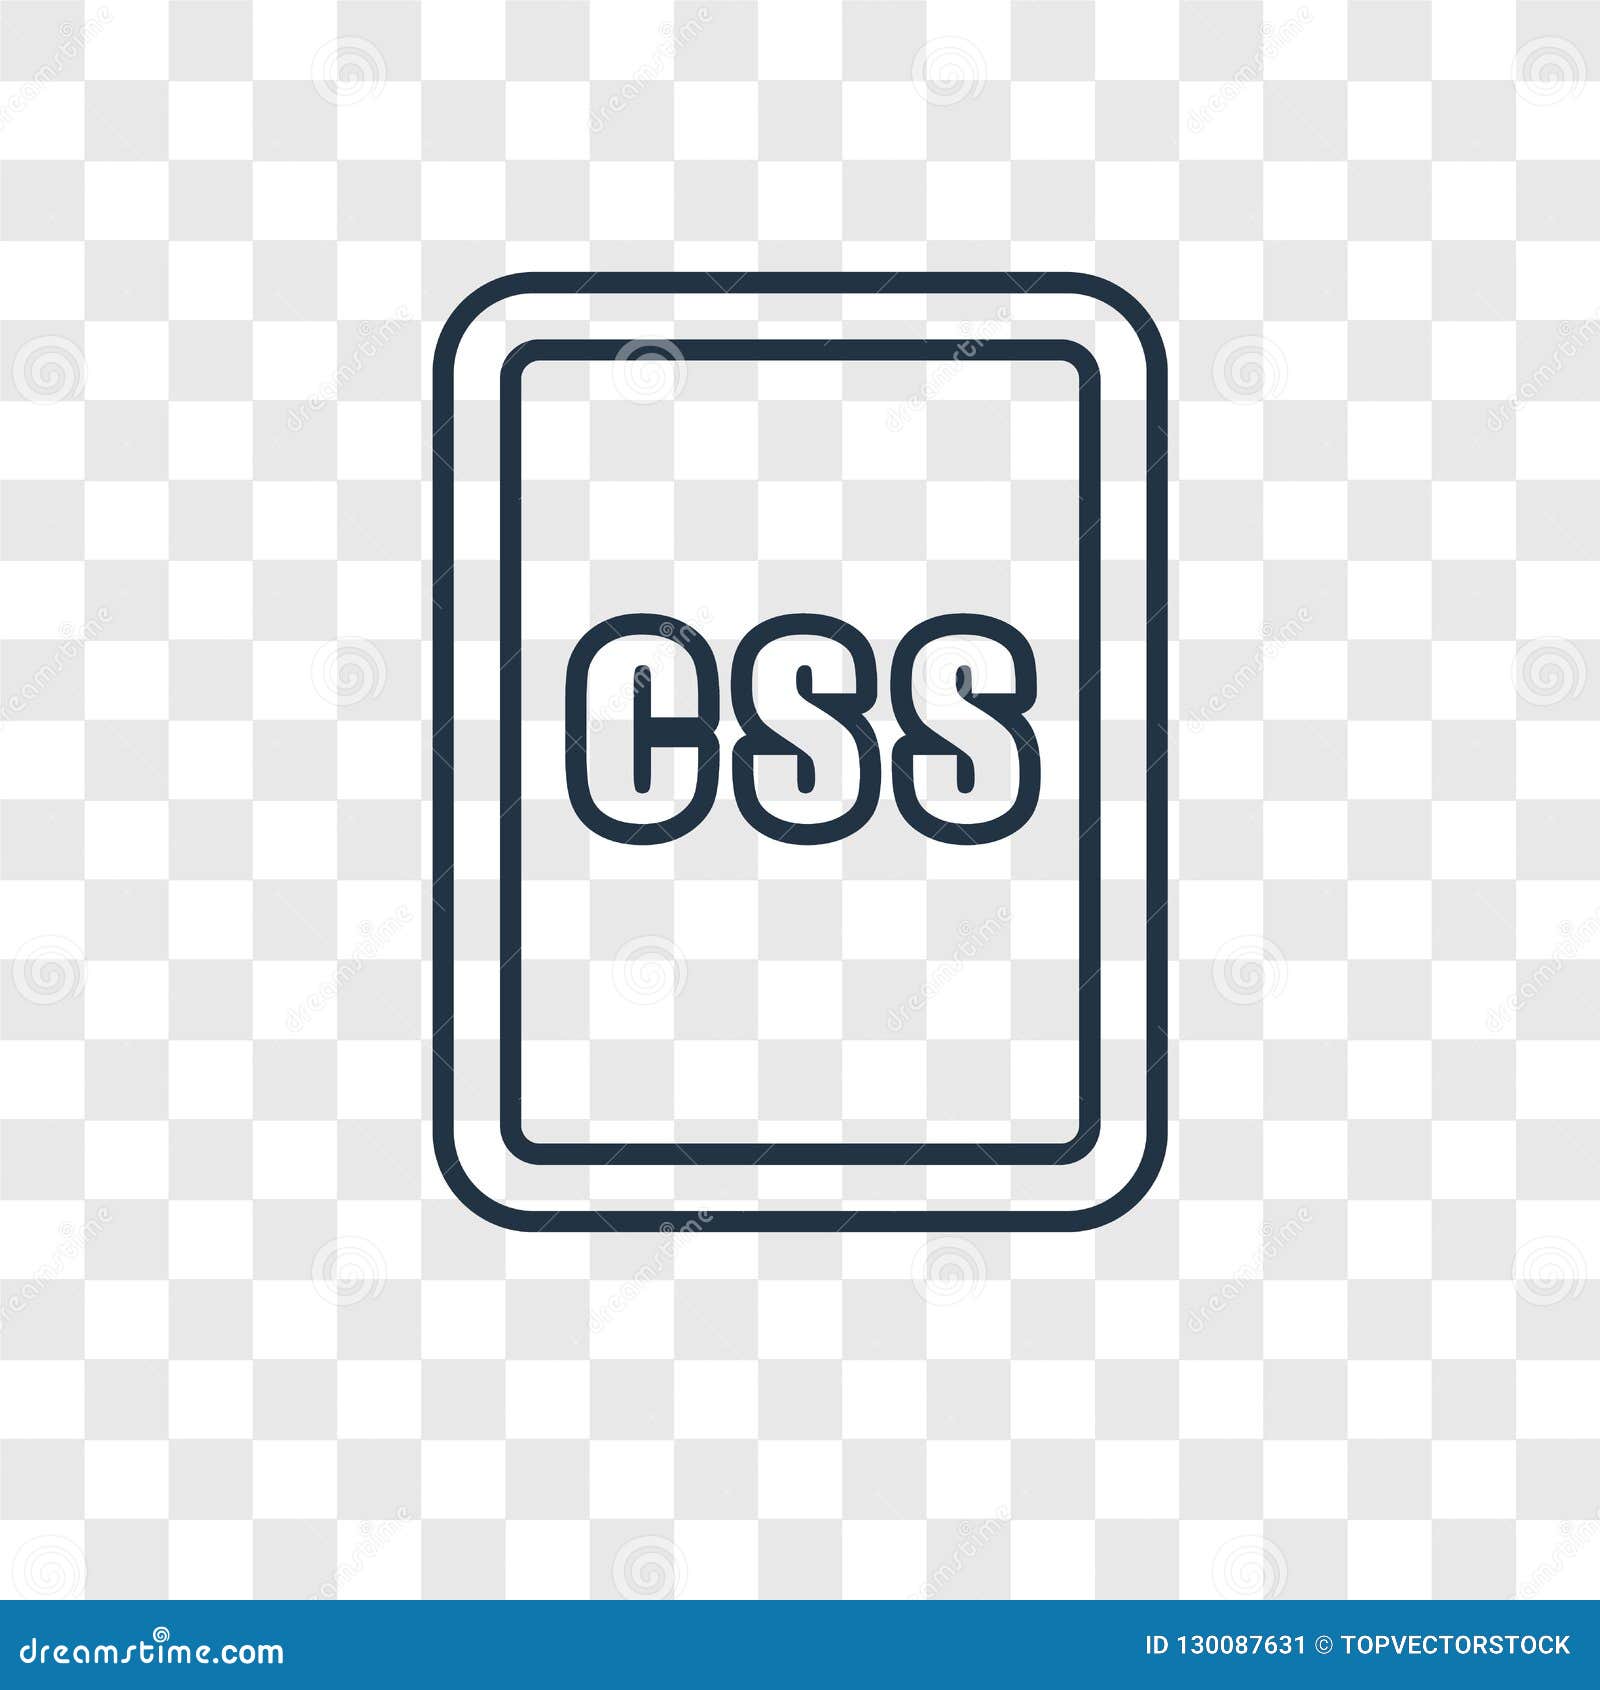 Icon đơn giản nhưng tinh tế trong hình ảnh concept CSS sẽ rất thú vị. Hình ảnh này sử dụng kiểu thiết kế tuyệt vời, với một icon dạng vector đơn giản, tạo ra một kiểu thiết kế sáng tạo và đẹp mắt.